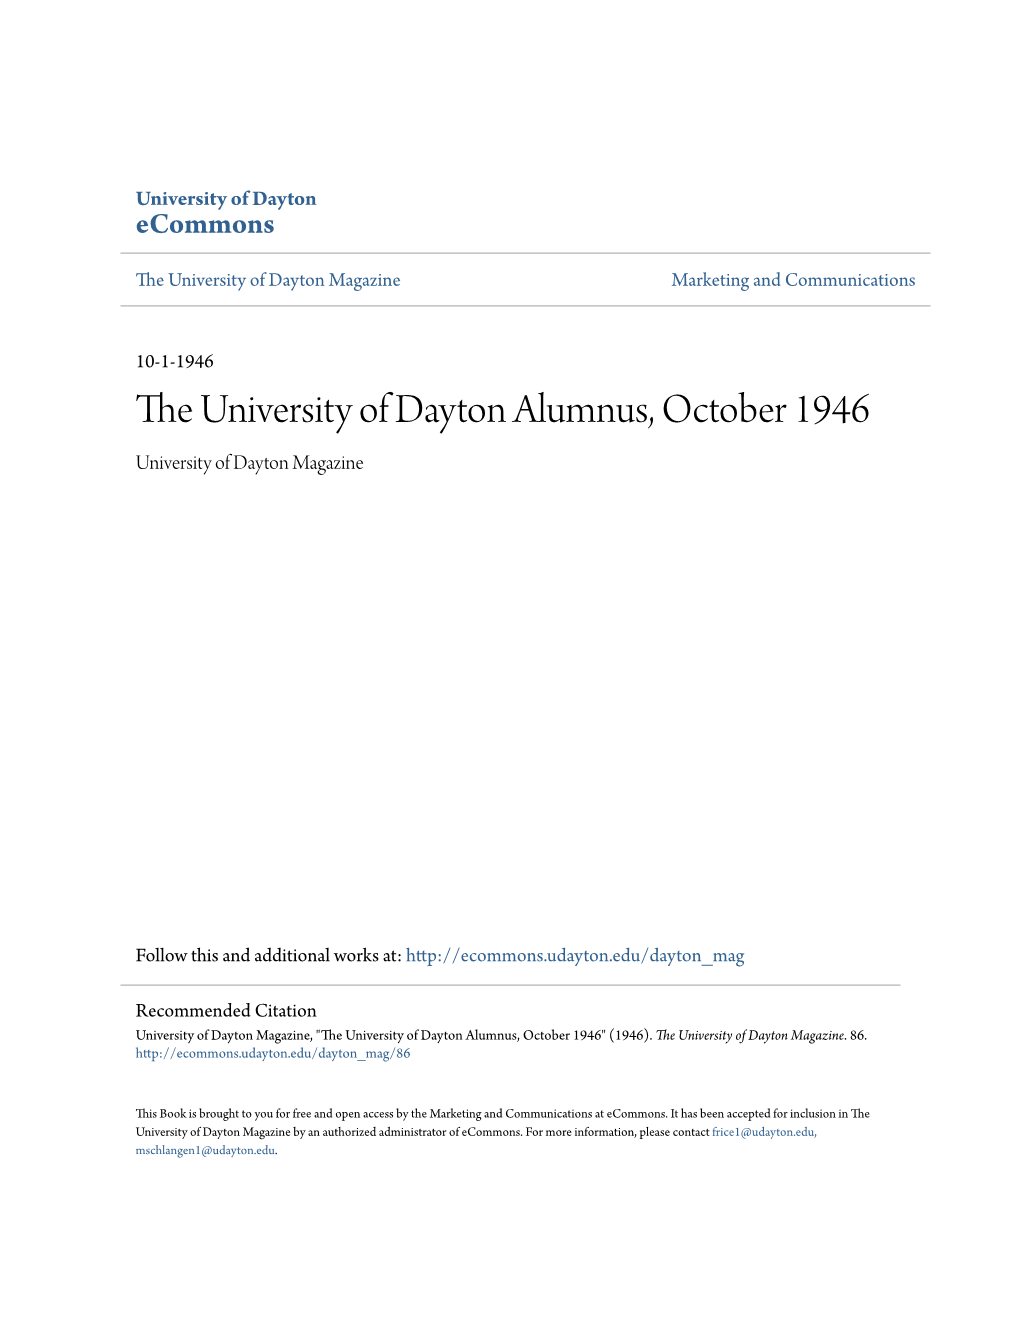 The University of Dayton Alumnus, October 1946